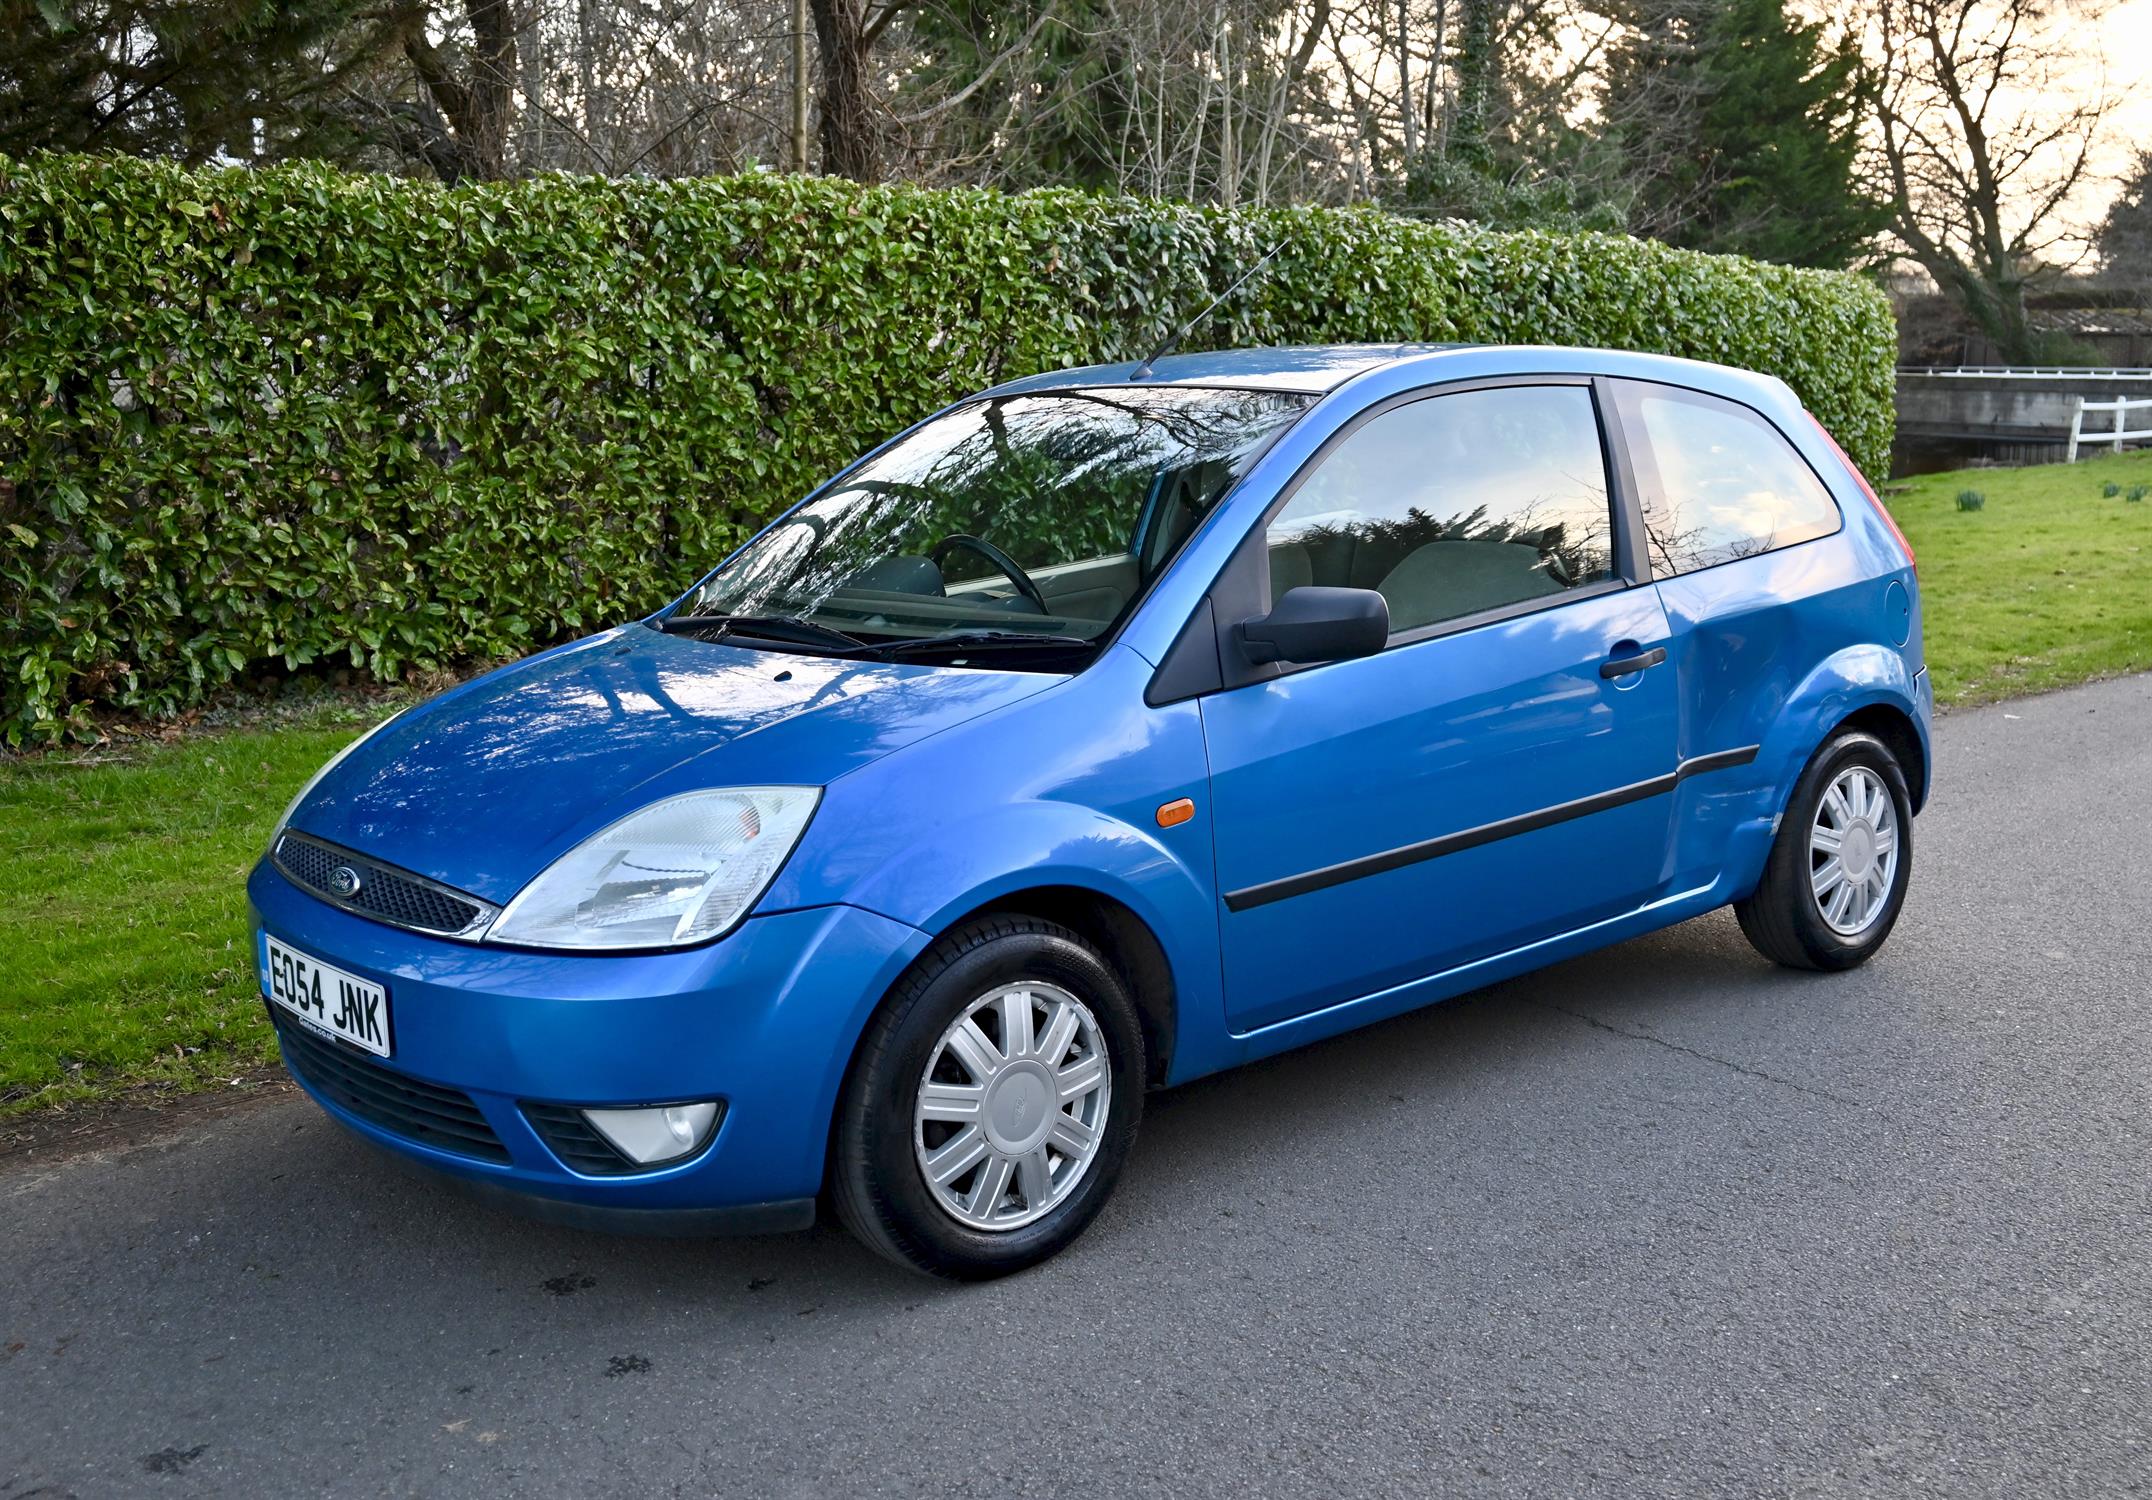 2004 Ford Fiesta 1.4 Ghia 3-door hatchback. Registration number: EO54 JNK. Metallic Aquarius Blue, - Image 12 of 16